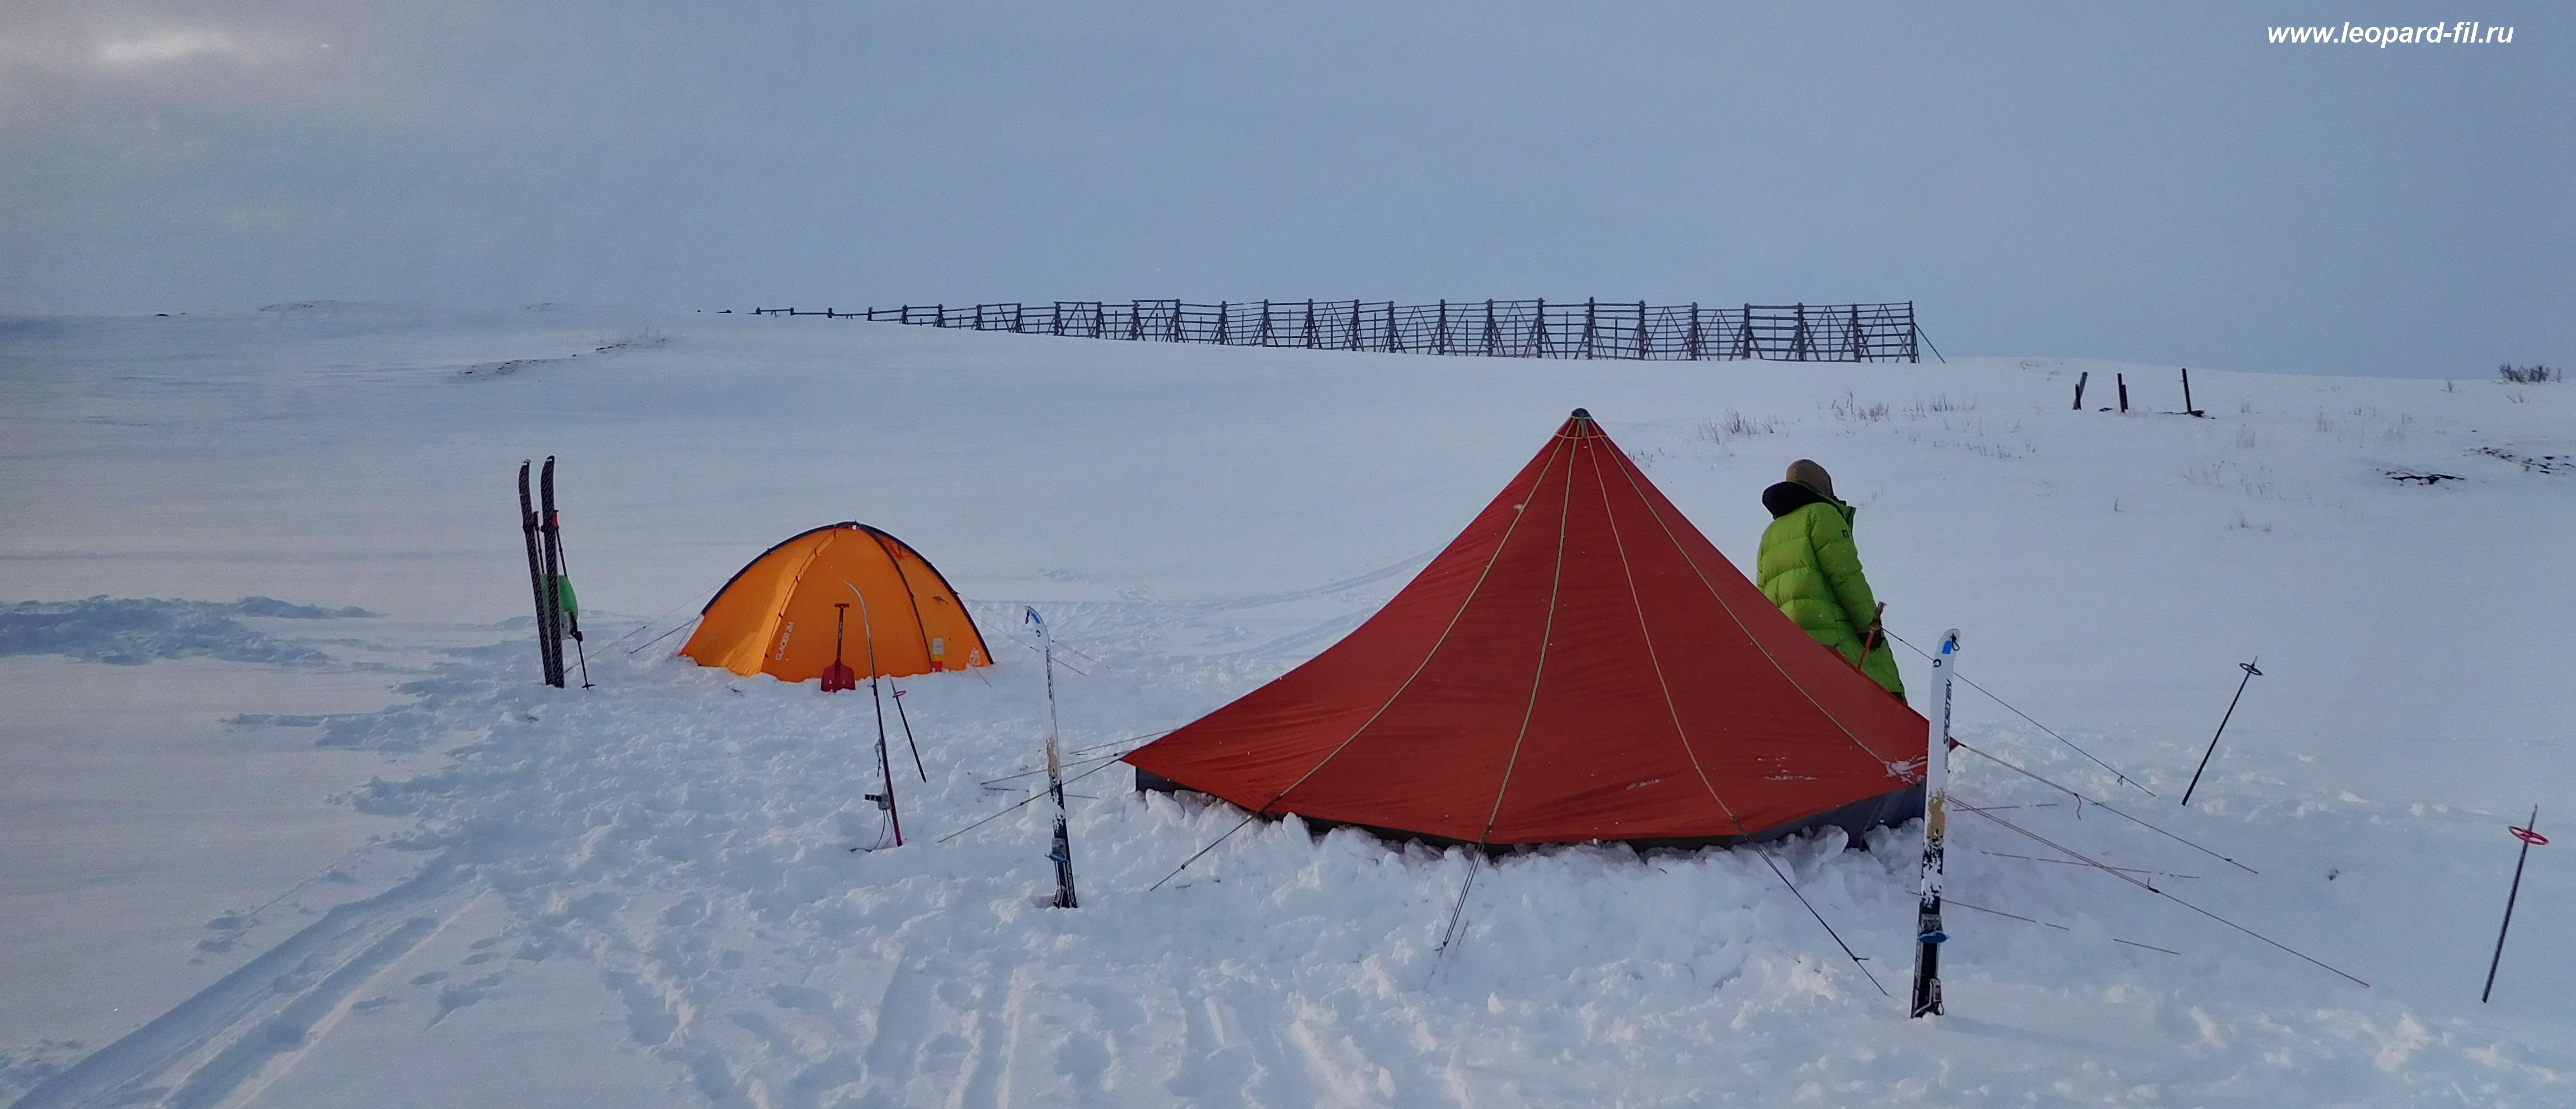 Однослойная палатка зимой - сравниваем с двухслойной